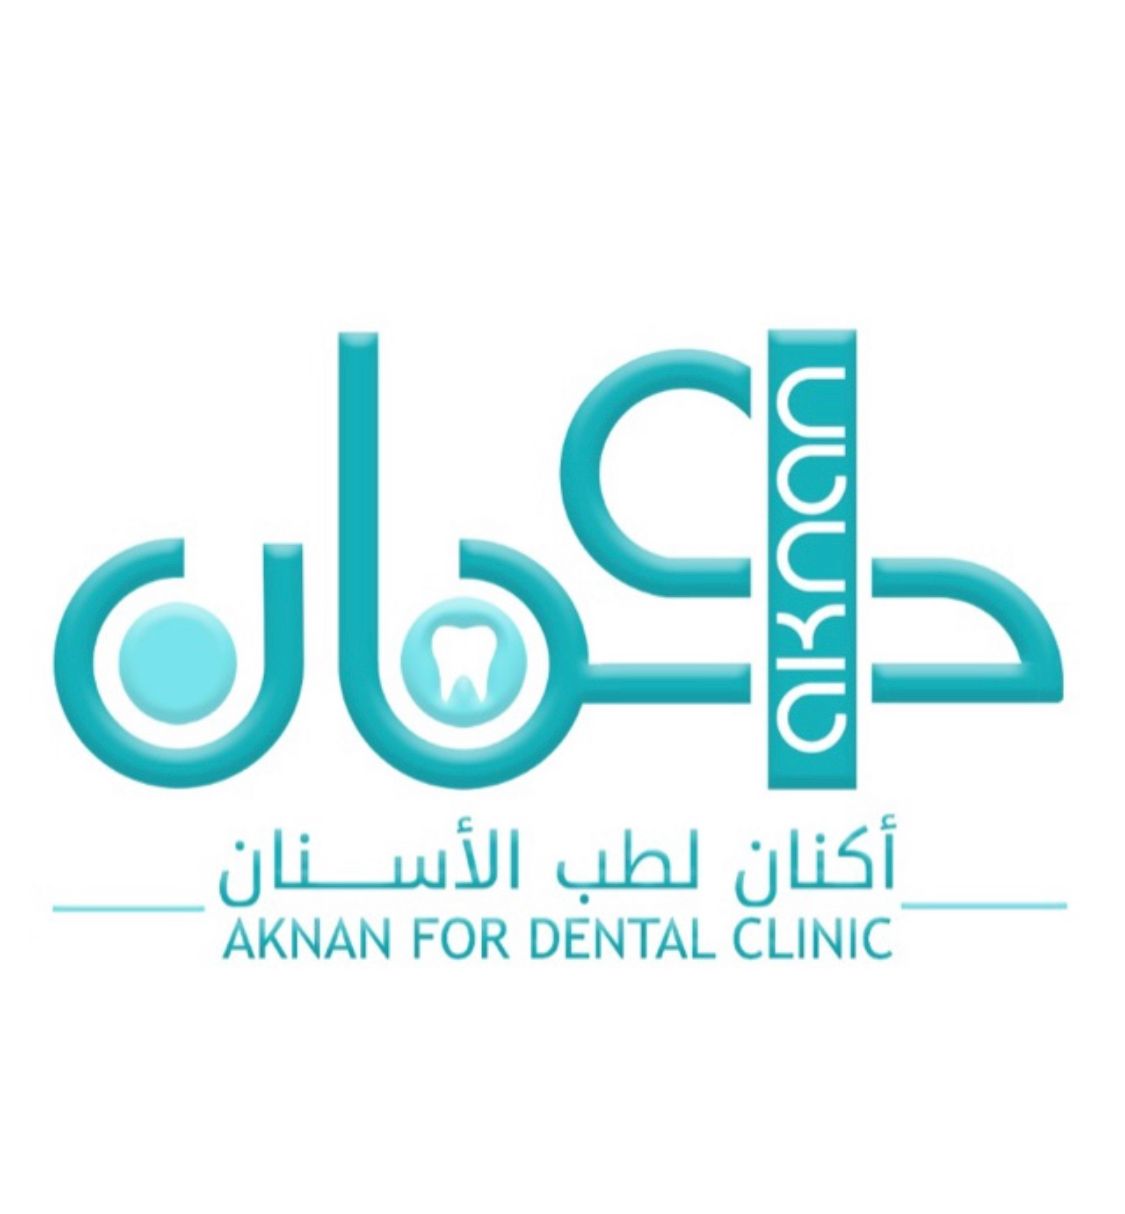 عيادات اكنان لطب الأسنان ( الرياض - حي اليرموك - طريق الصحابة )